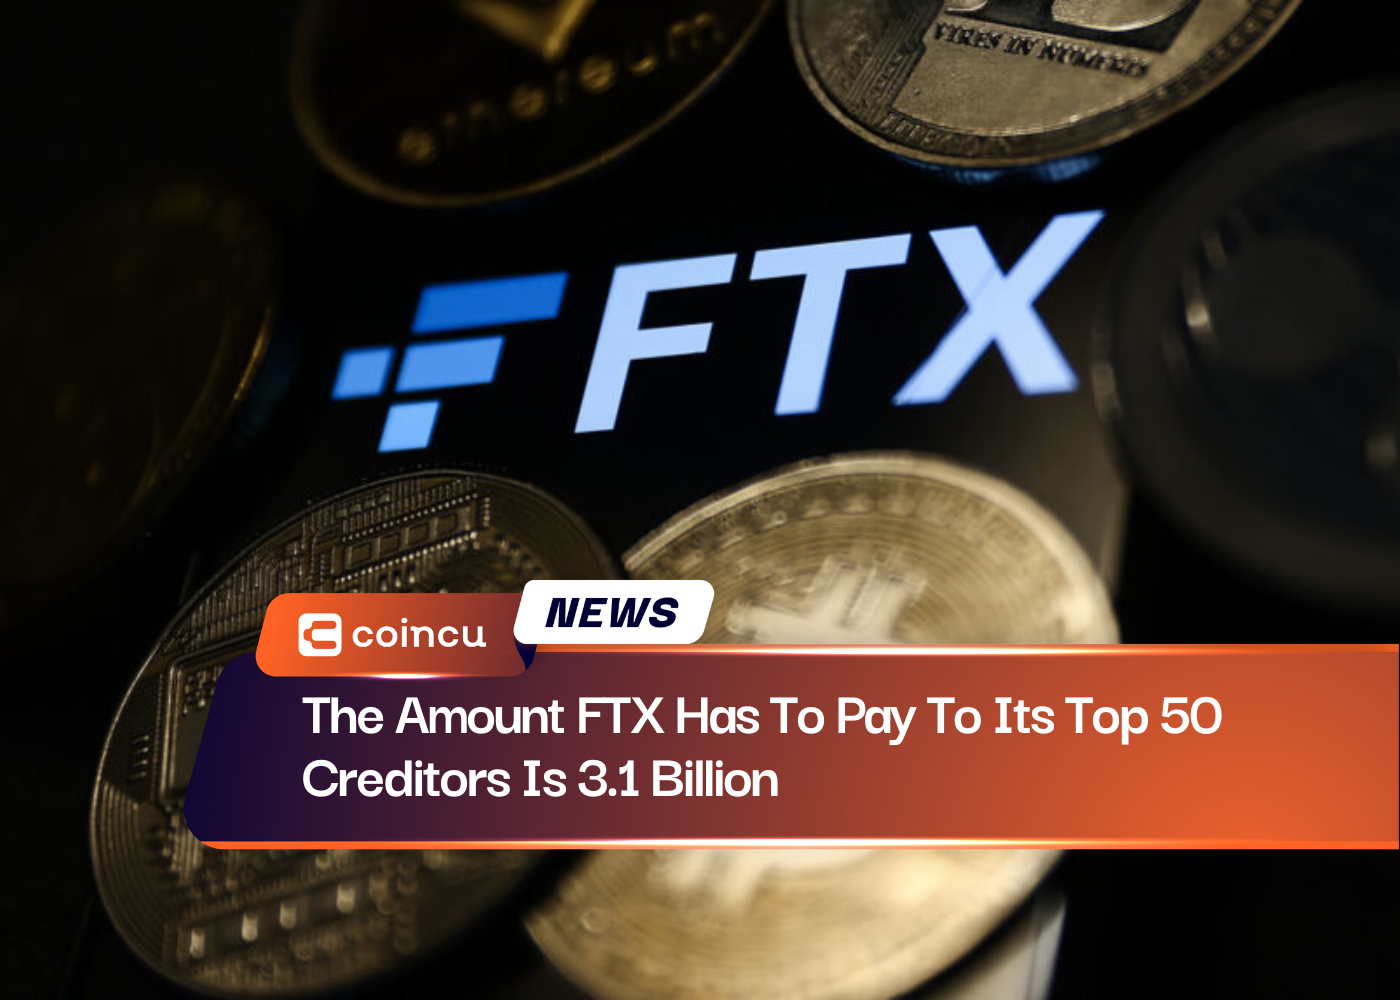 Сумма, которую FTX должна выплатить своим 50 крупнейшим кредиторам, составляет 3.1 миллиарда долларов.